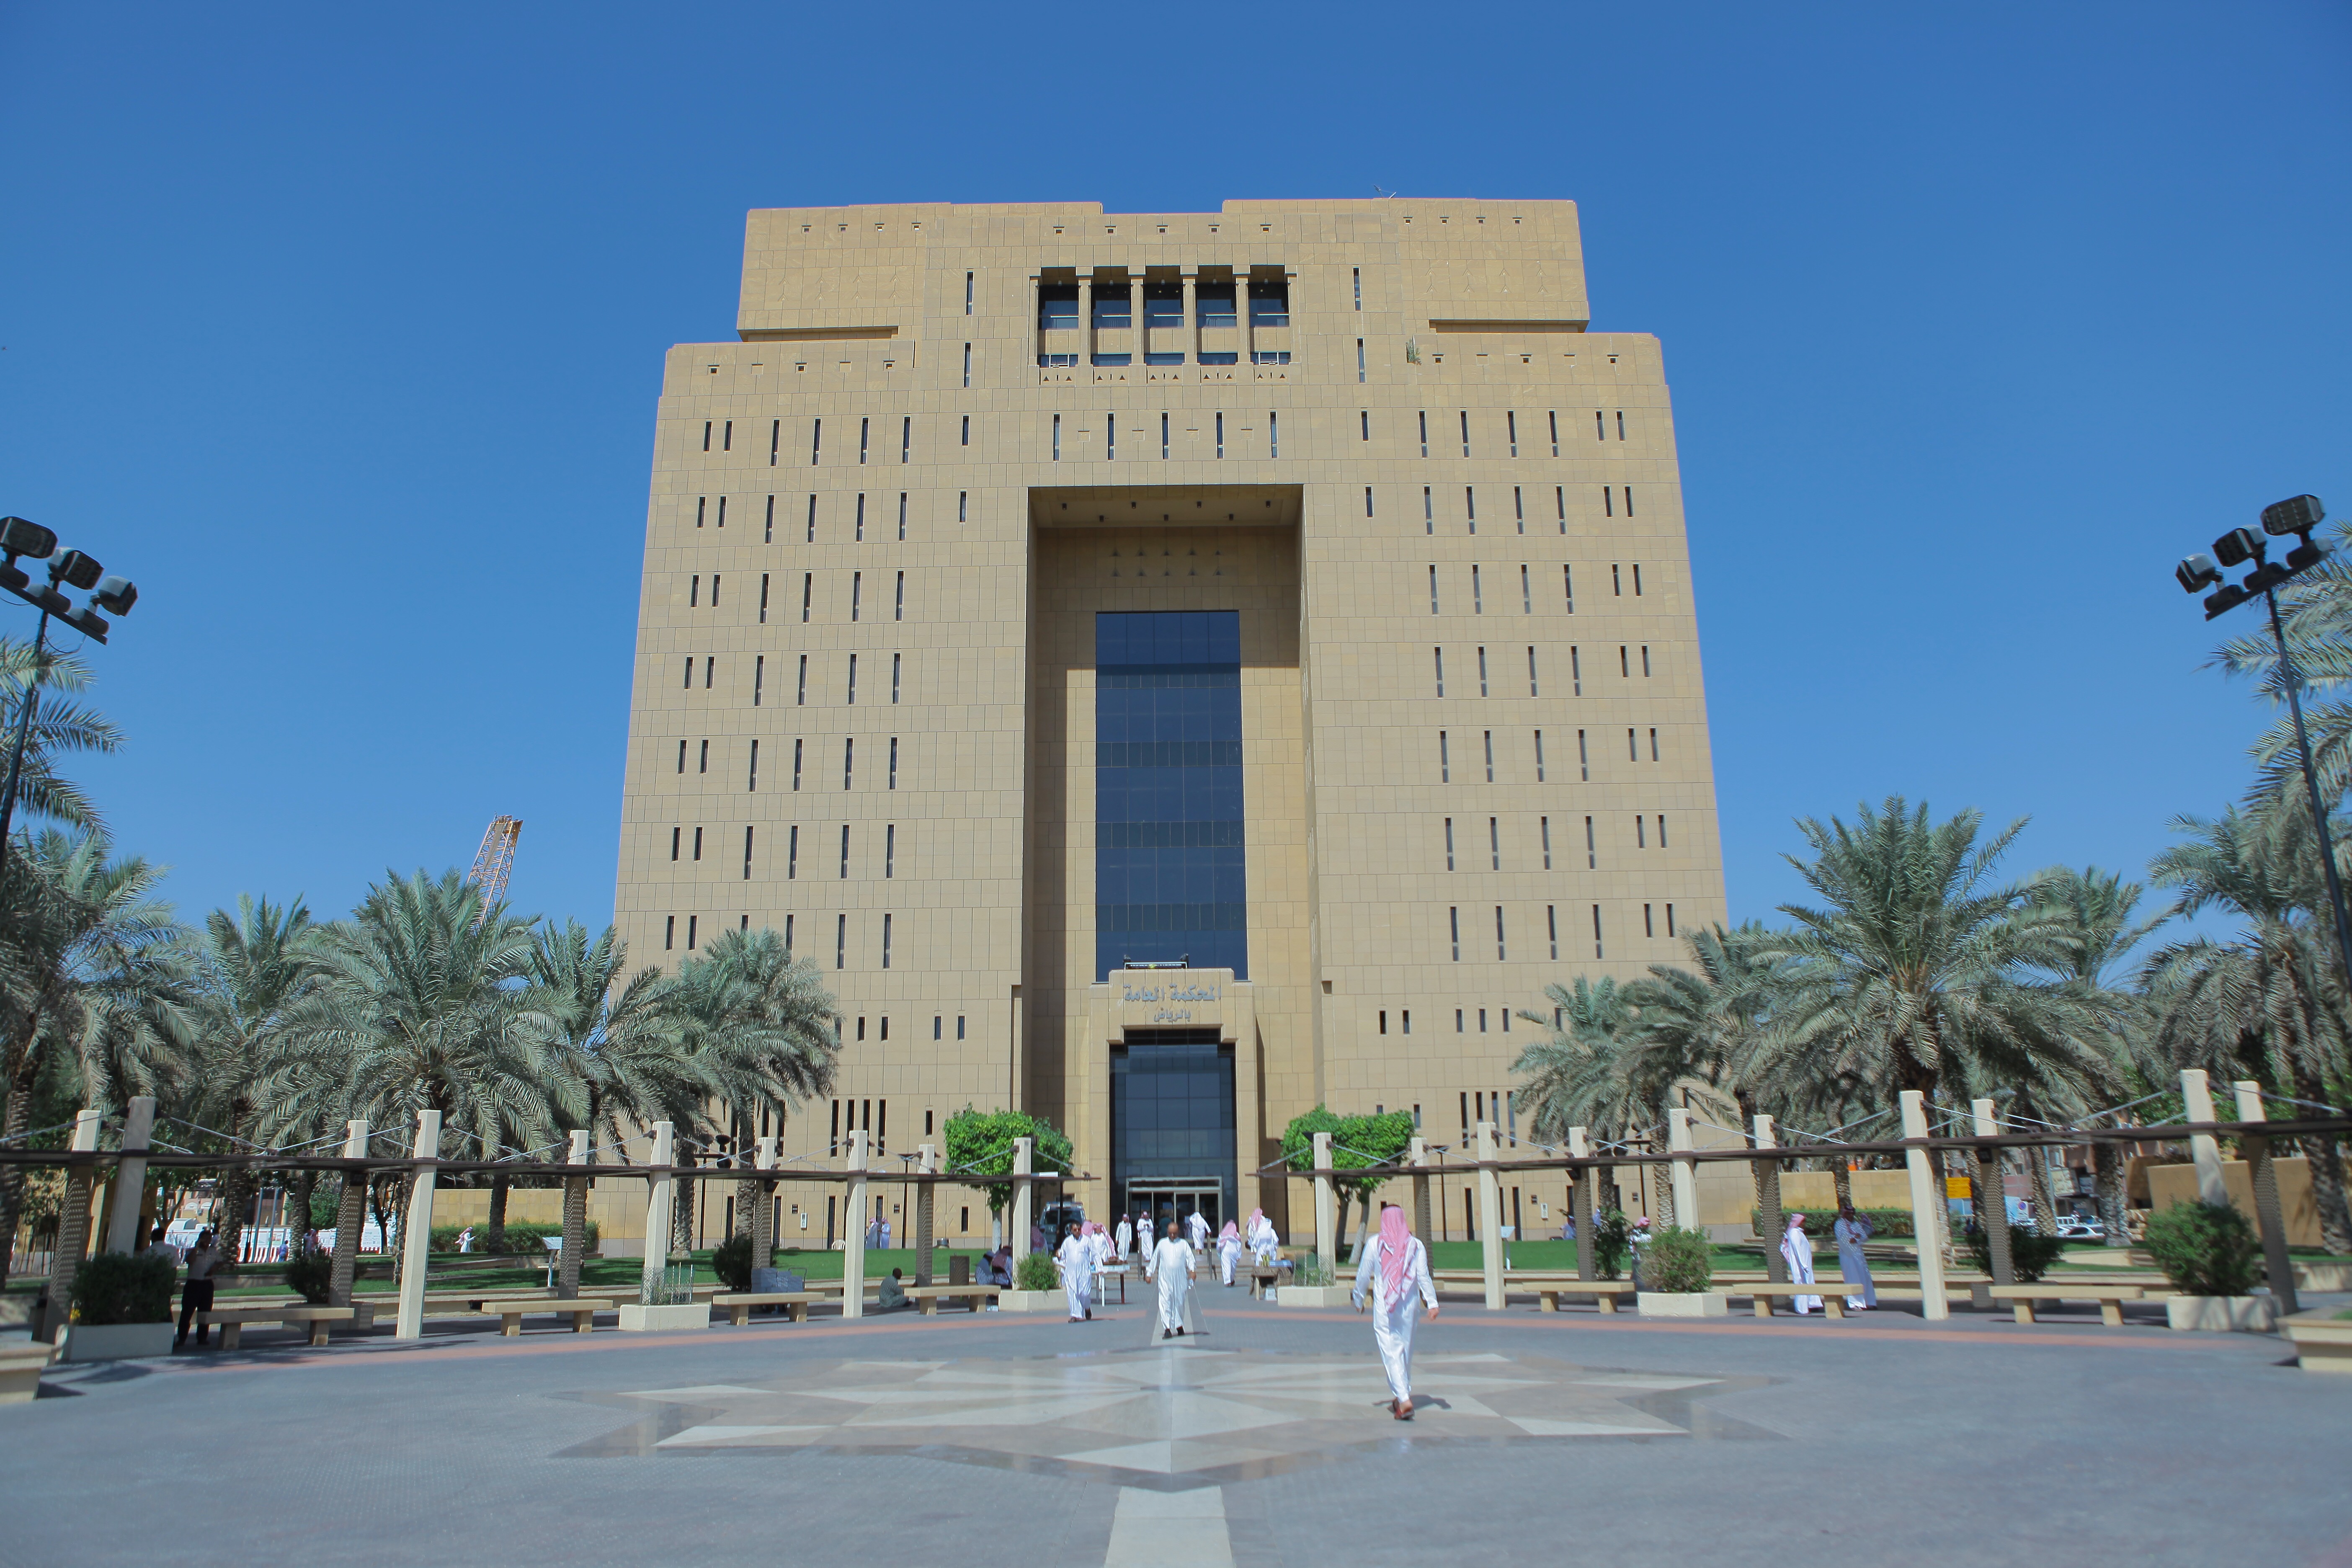 المحكمة العامة في الرياض